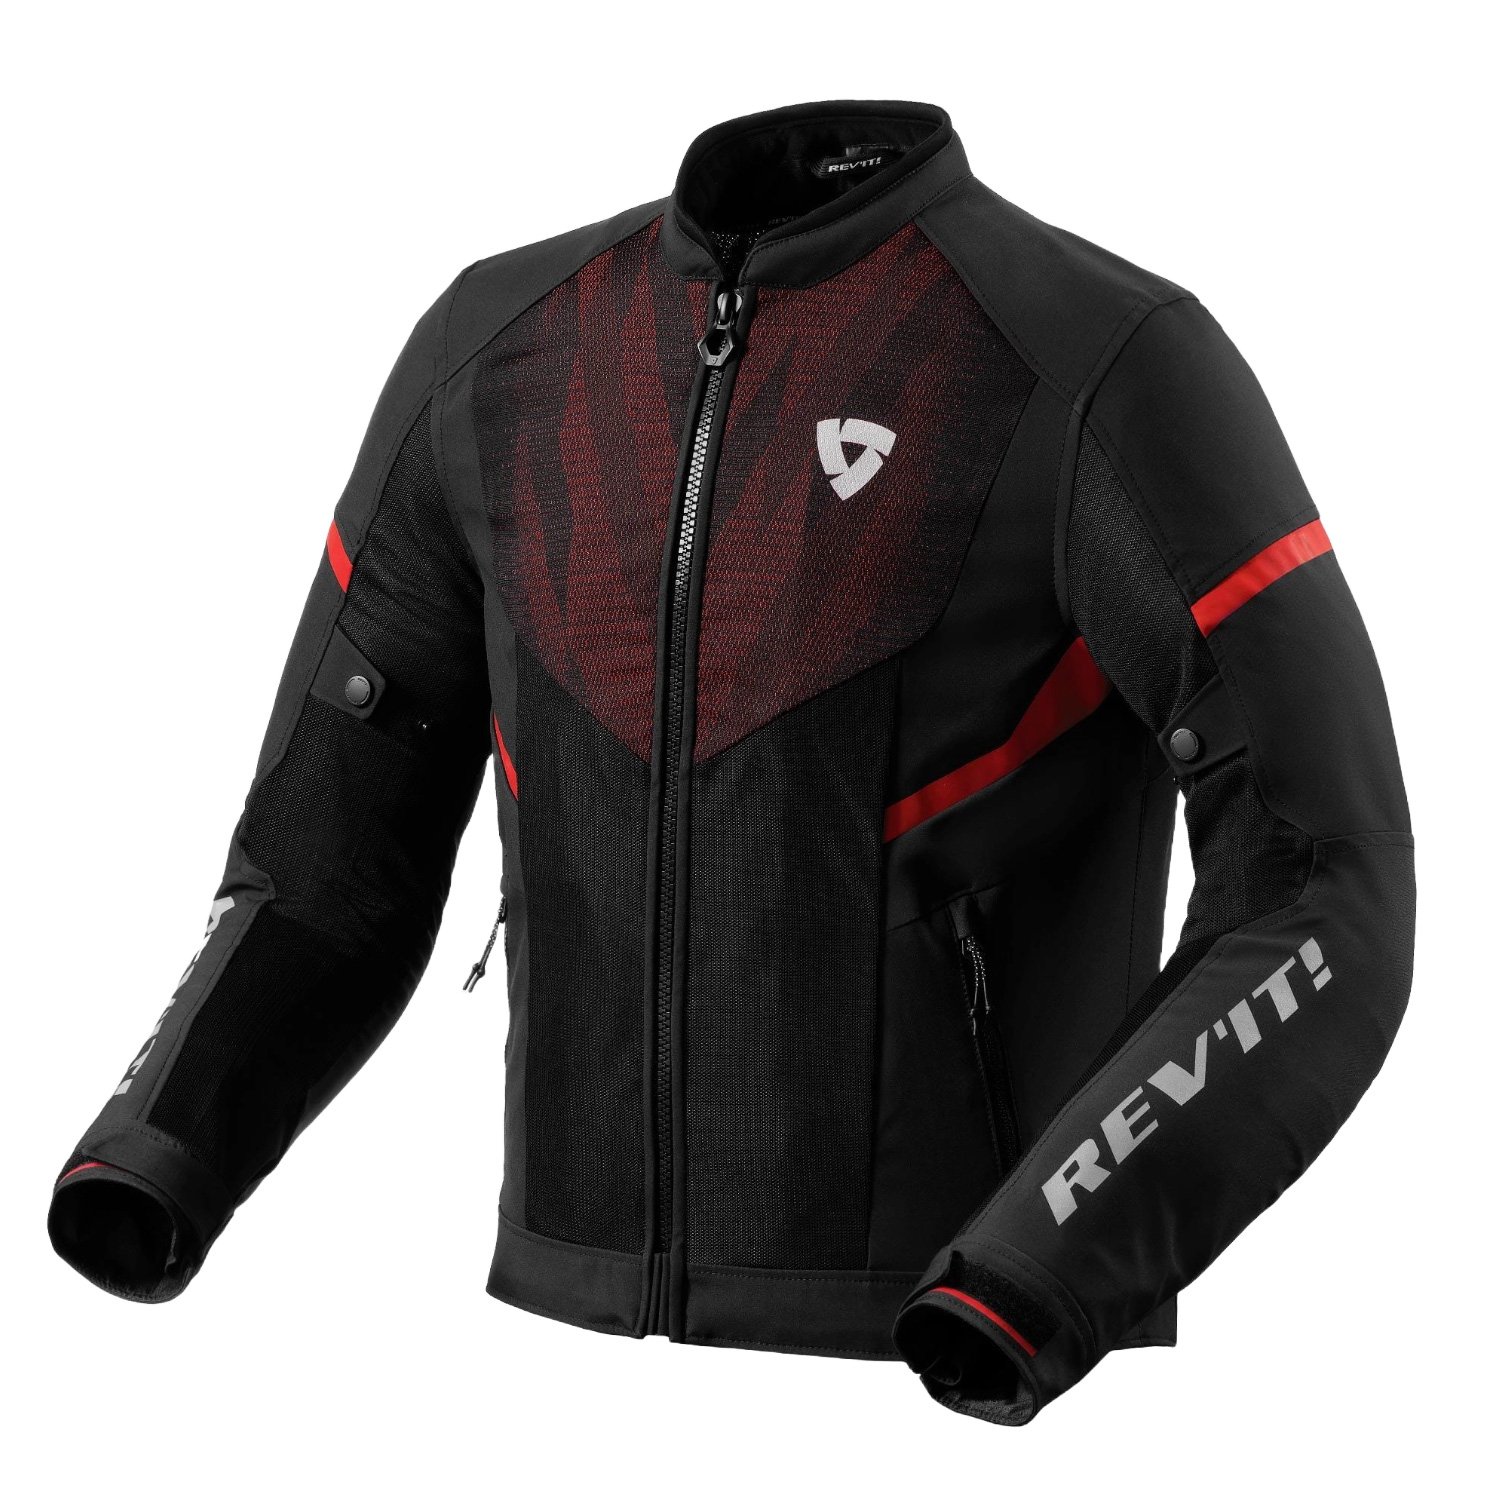 Image of REV'IT! Hyperspeed 2 GT Air Jacket Black Neon Red Size M EN